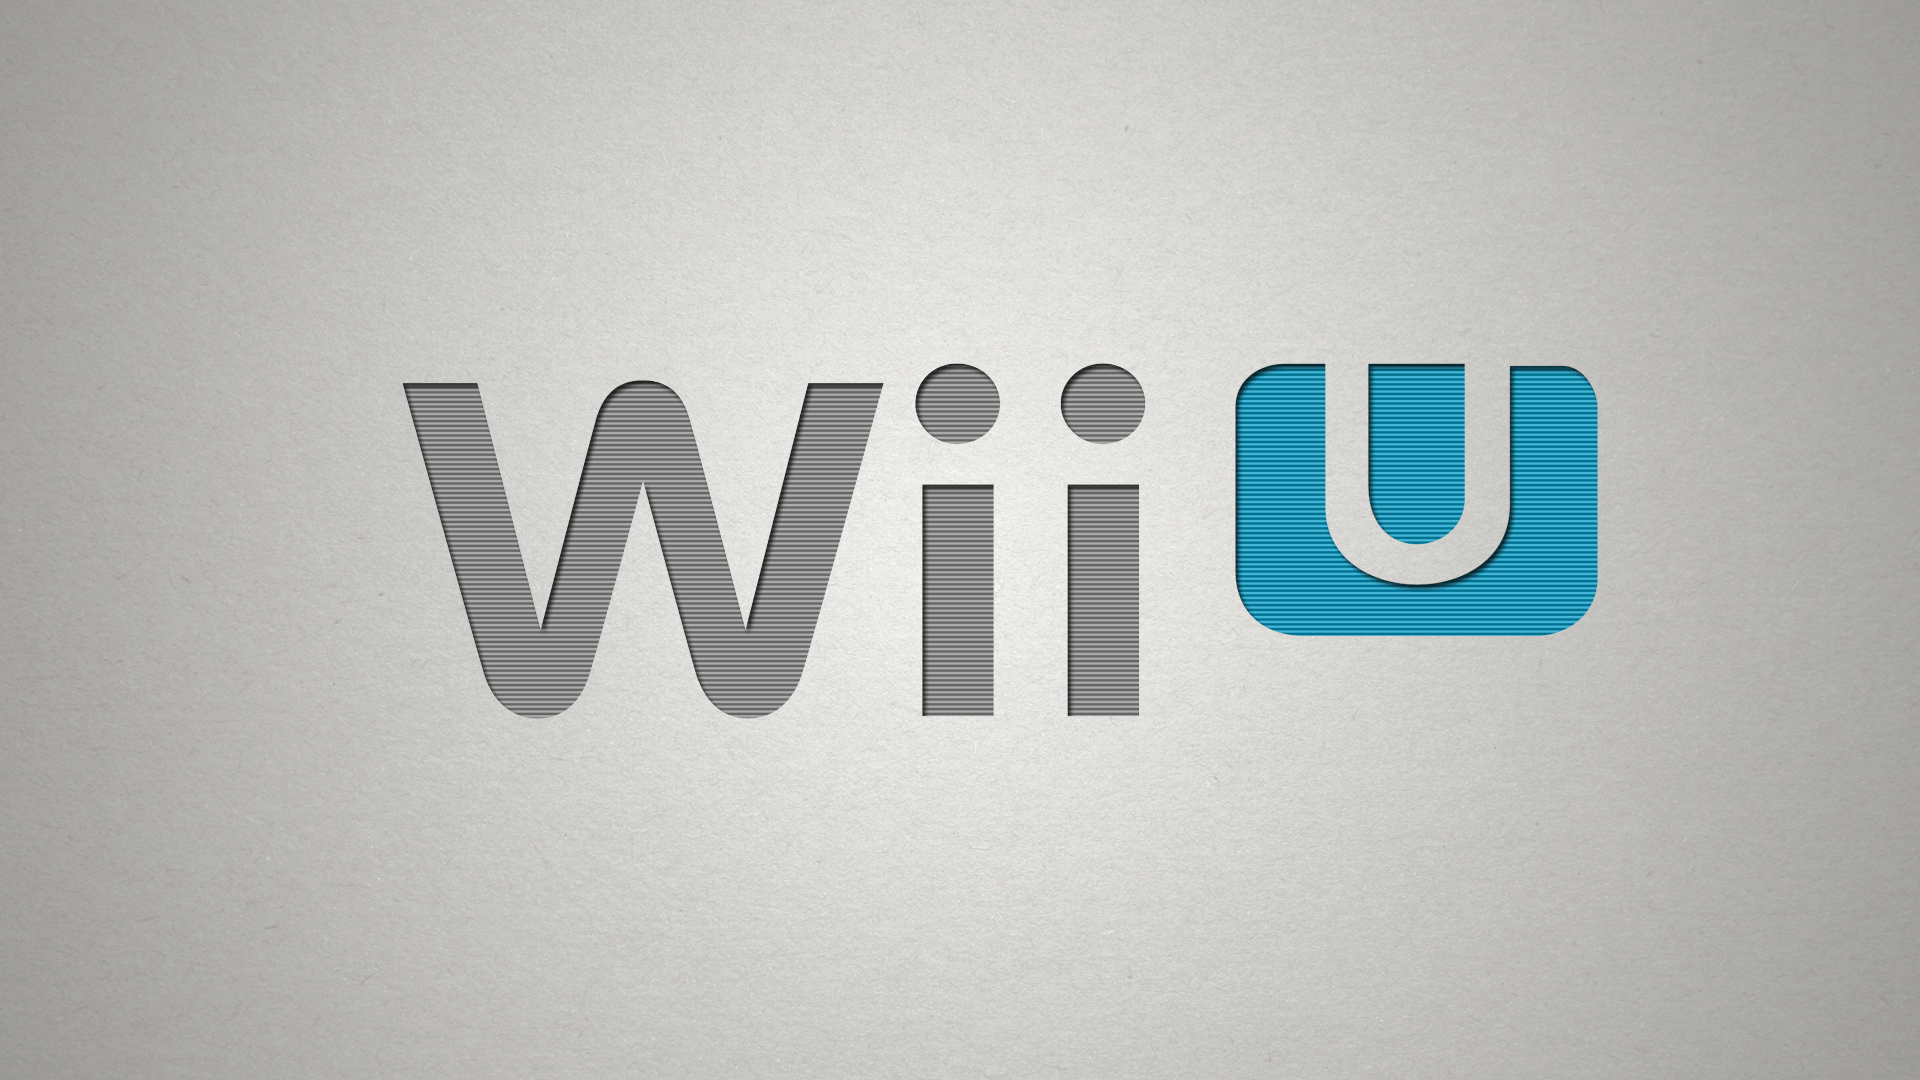 Nintendo Wii U Wallpapers - Wallpaper Cave